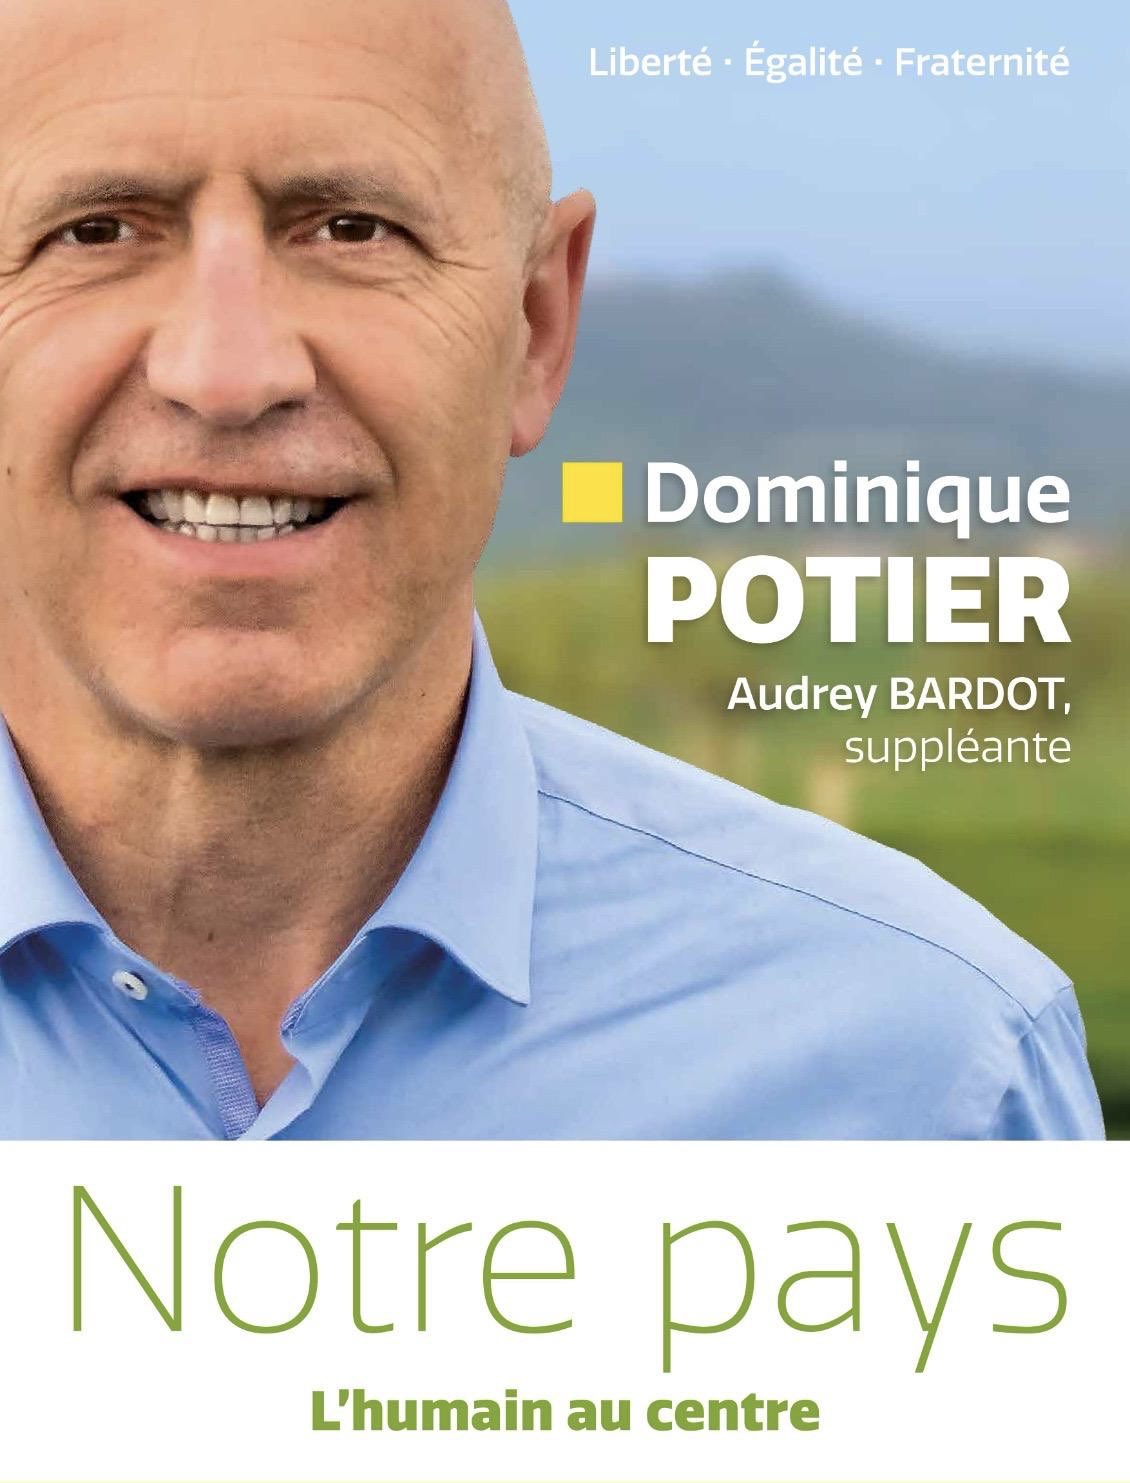 Dominique POTIER candidat pour le Nouveau Front Populaire, 5ème circonscription de Meurthe-et-Moselle